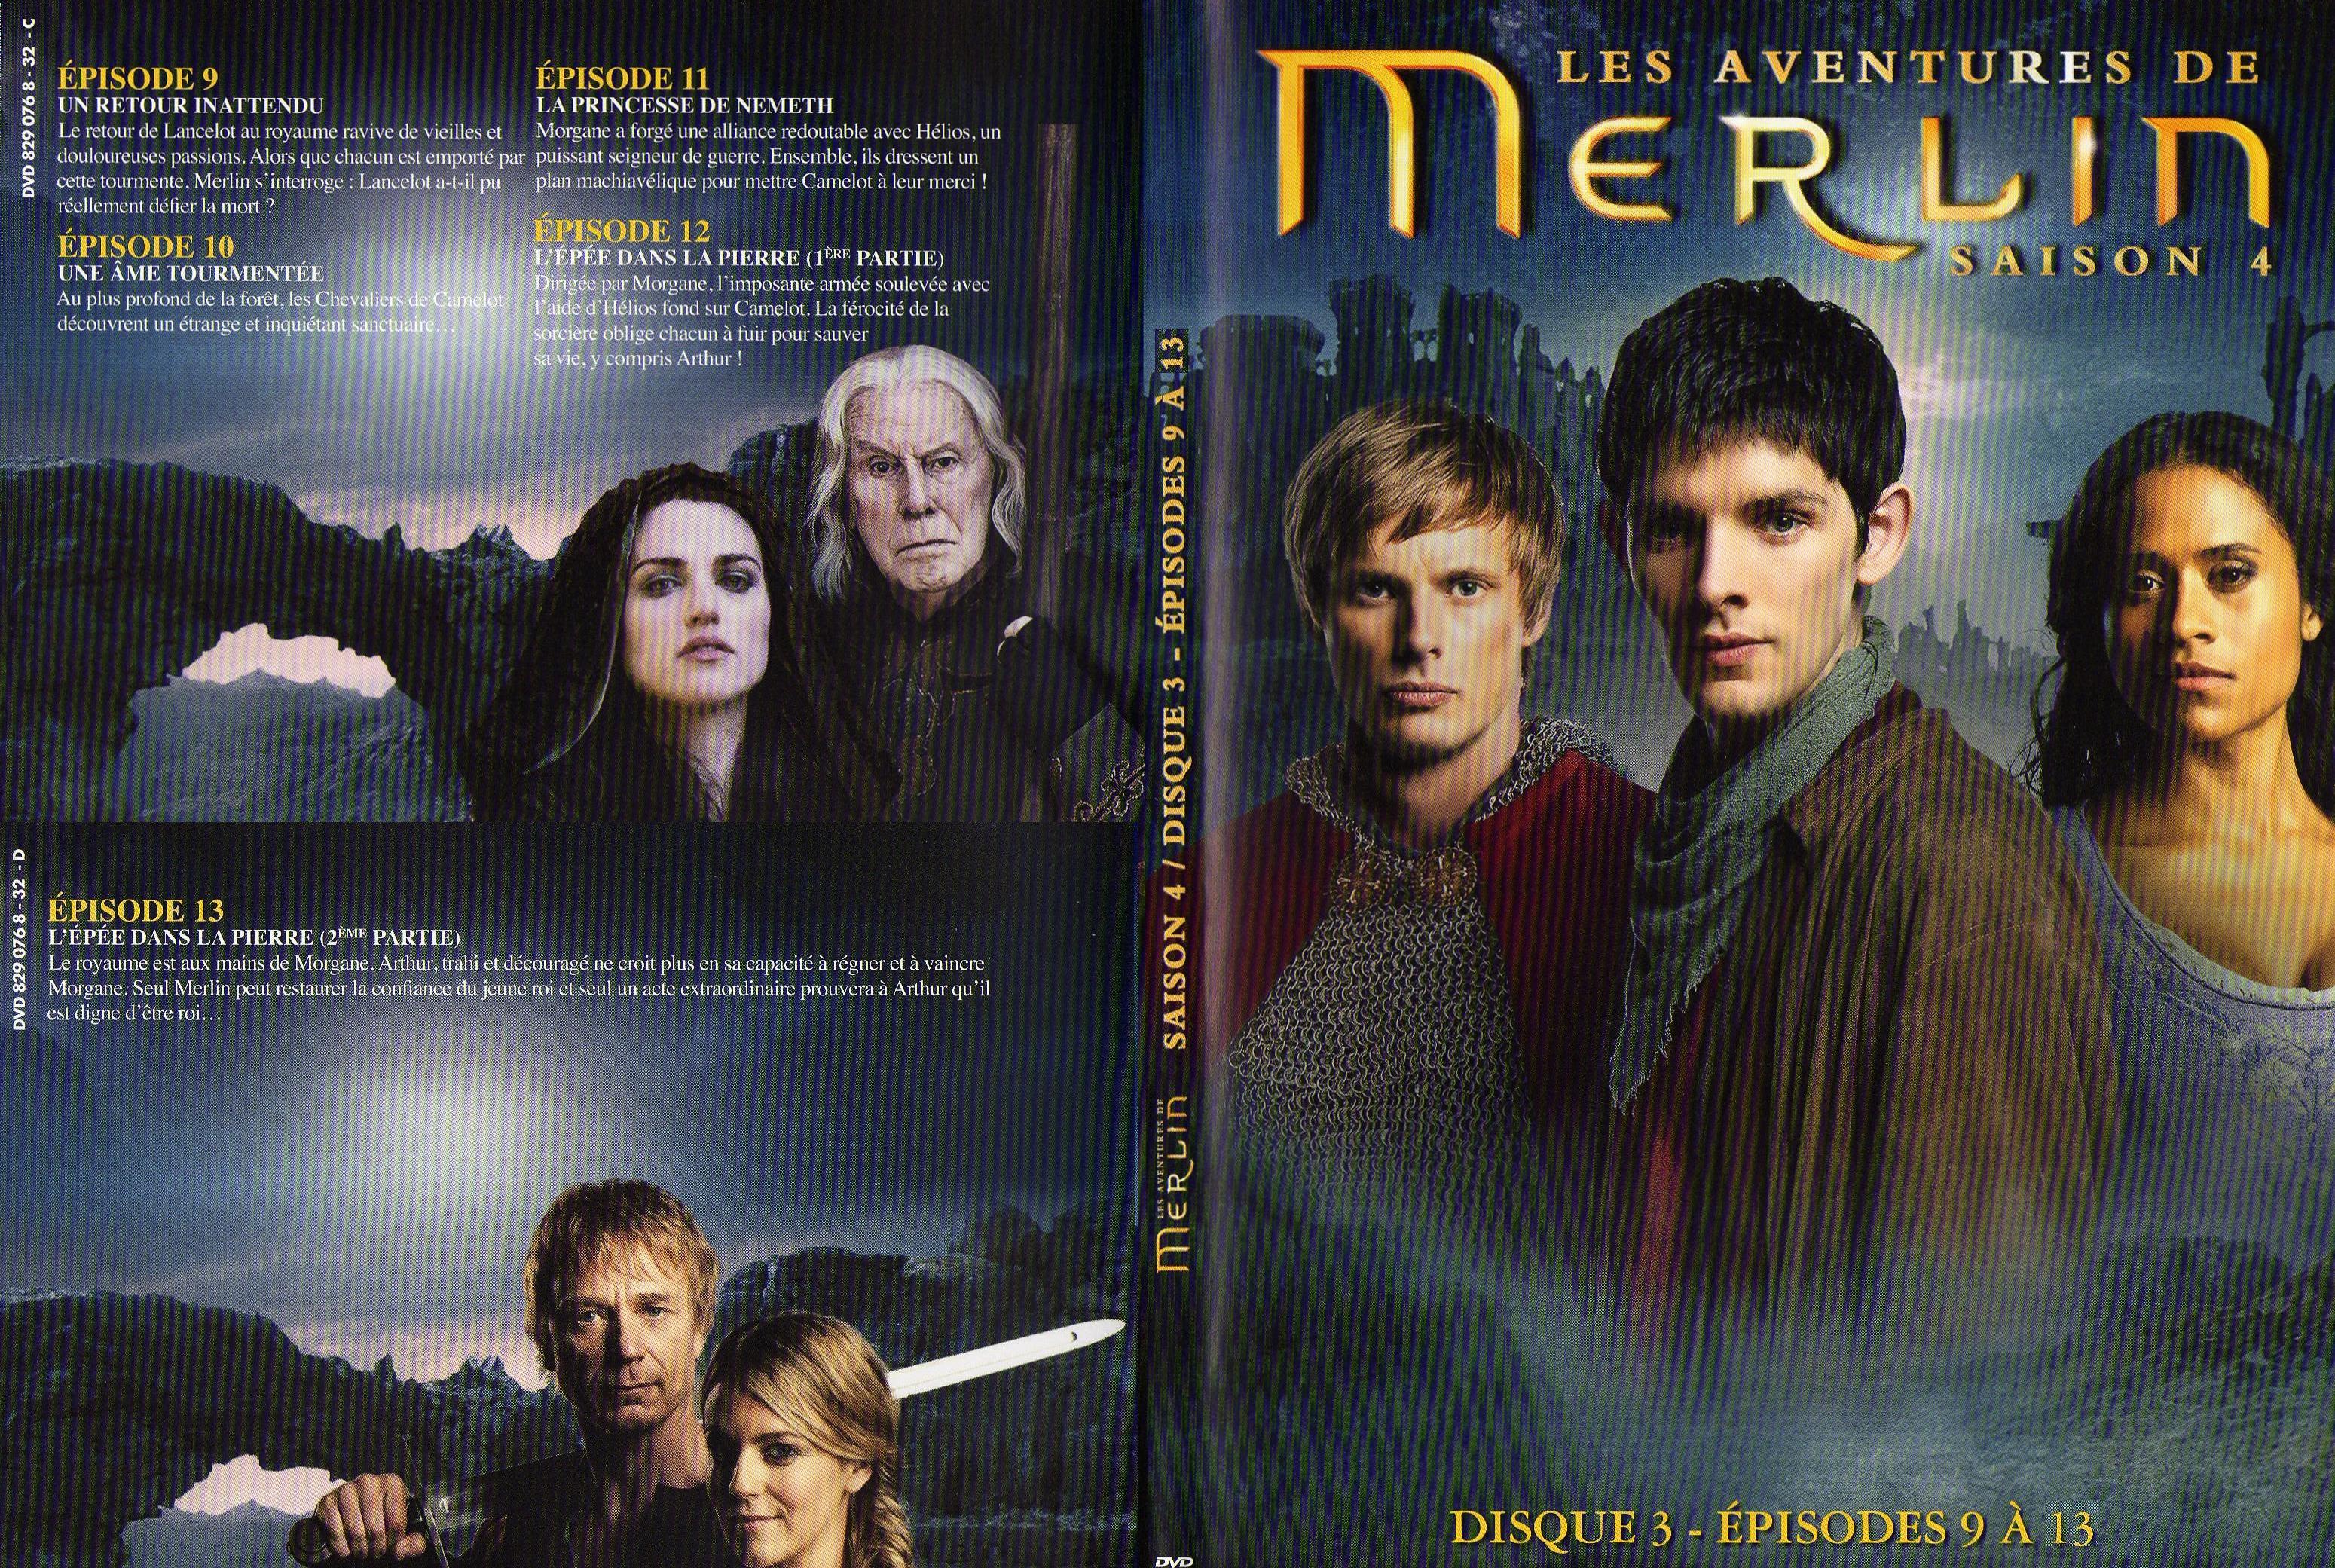 Jaquette DVD Merlin Saison 4 DVD 2